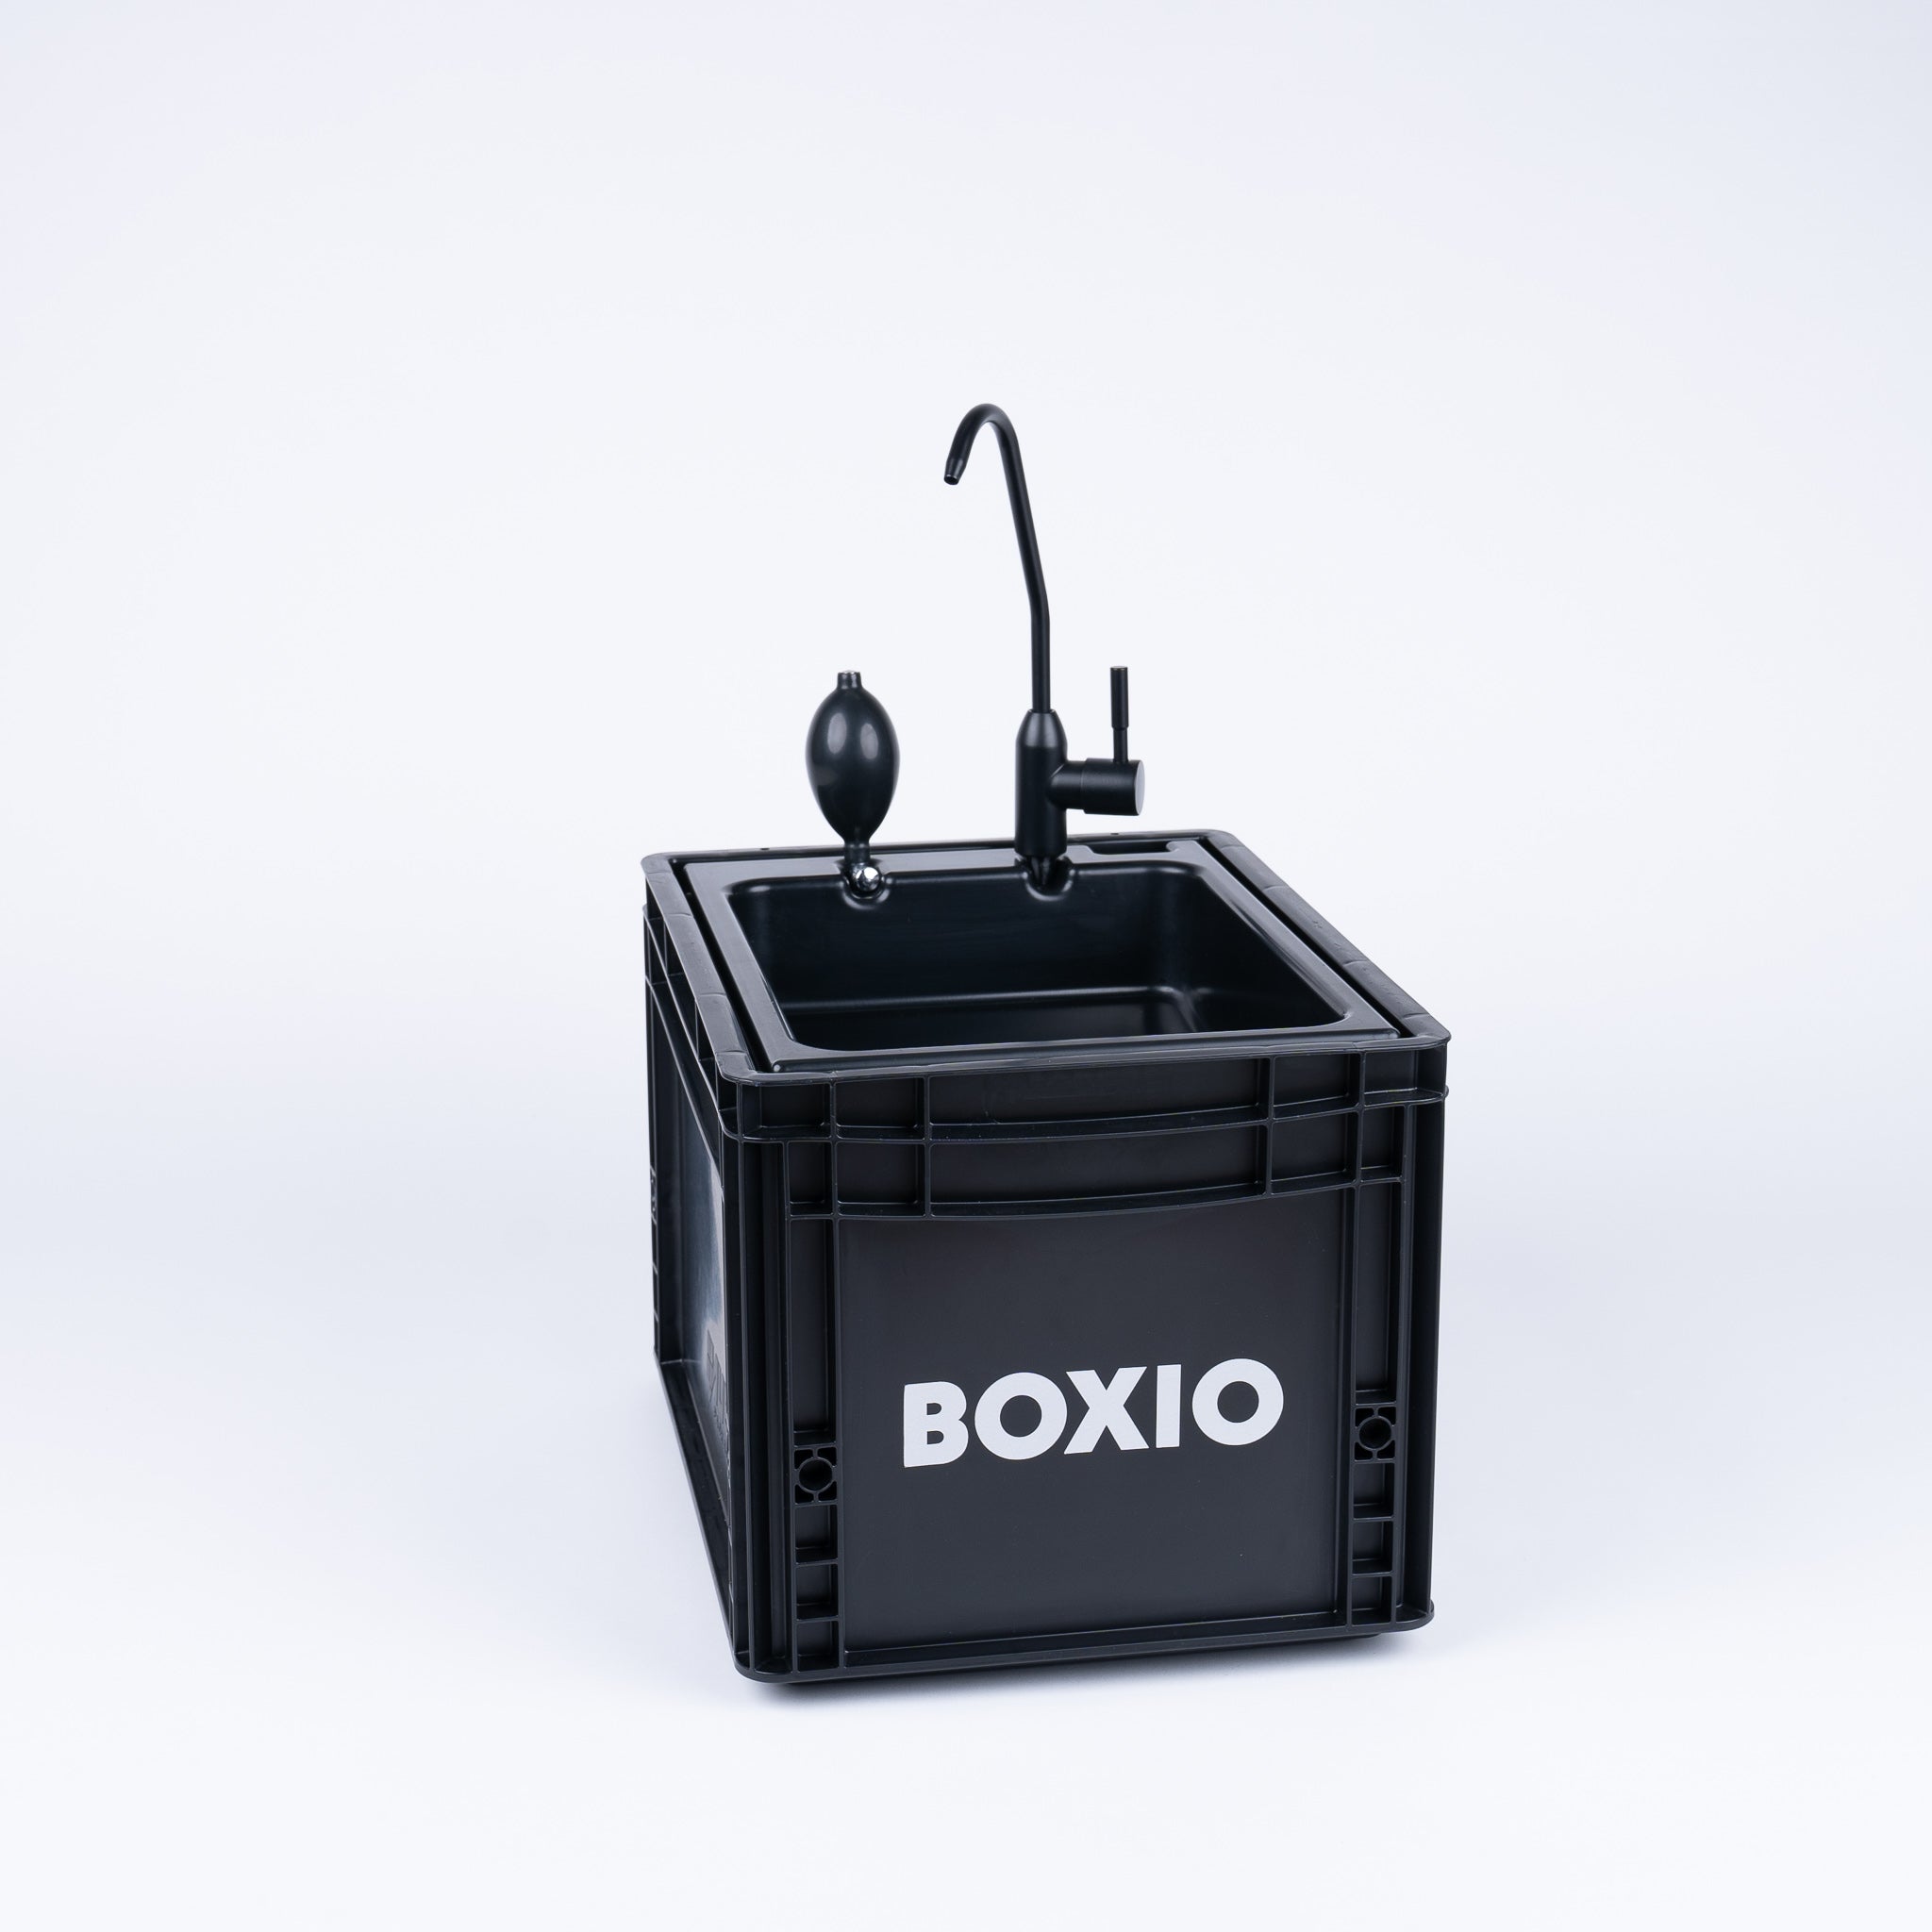 BOXIO SANITARY - Complete set met urineverwijderend toilet, mobiele wastafel en accessoires